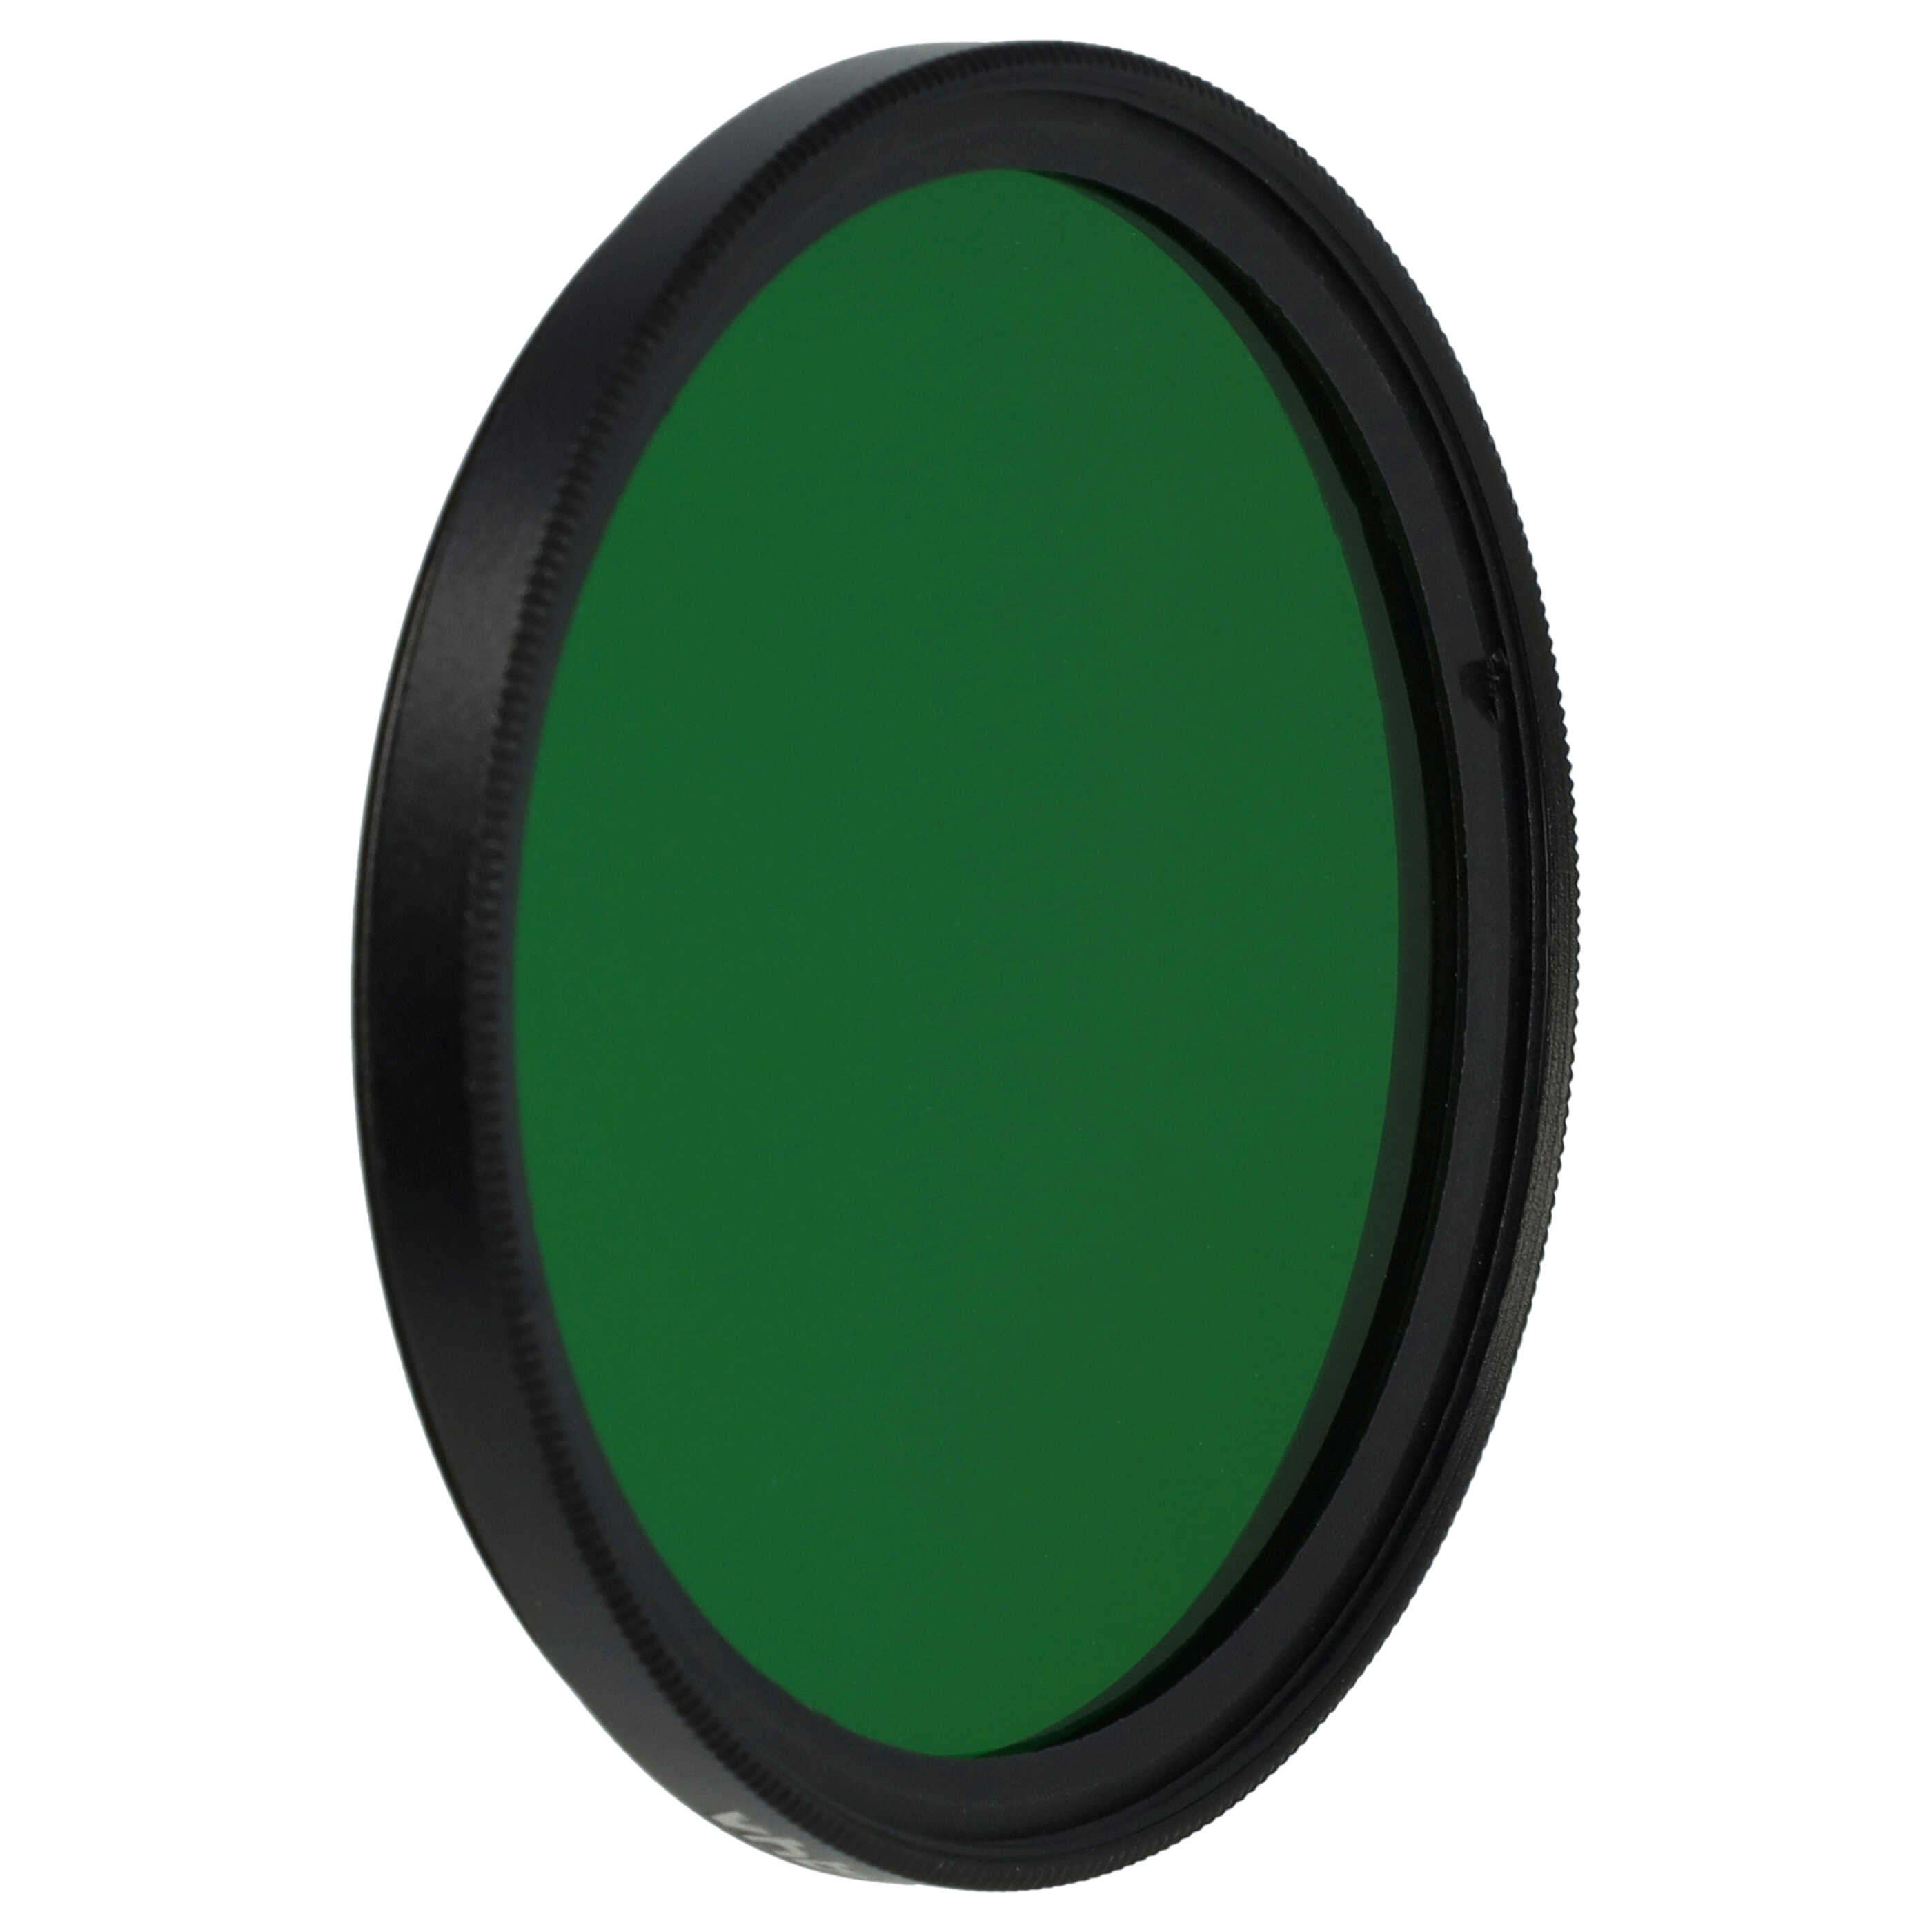 Filtro de color para objetivo de cámara con rosca de filtro de 55 mm - Filtro verde